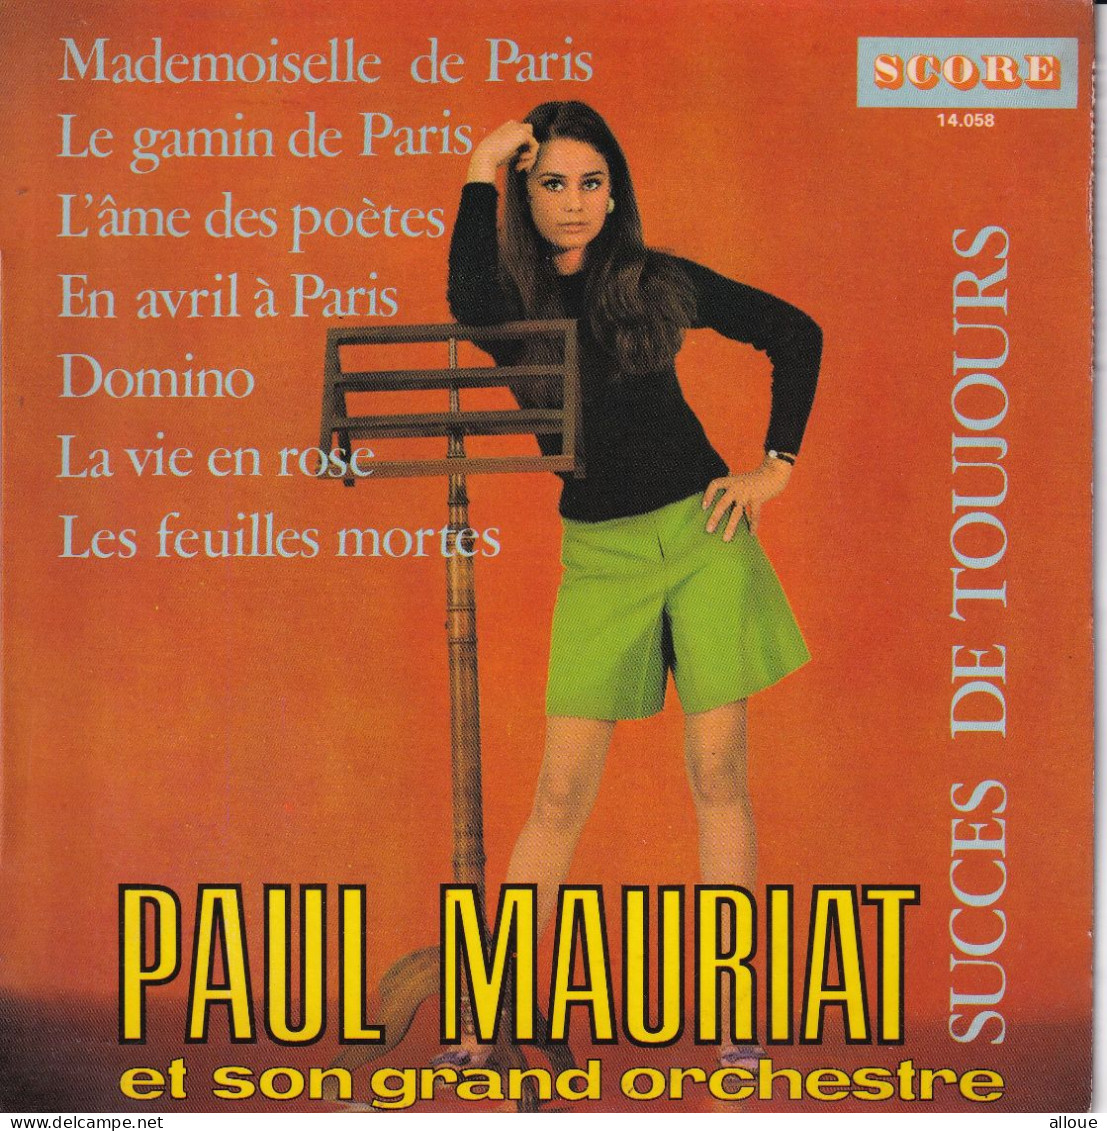 PAUL MAURIAT - SUCCES DE TOUJOURS - FR EP - MADEMOISELLE DE PARIS + 6 - Instrumentaal